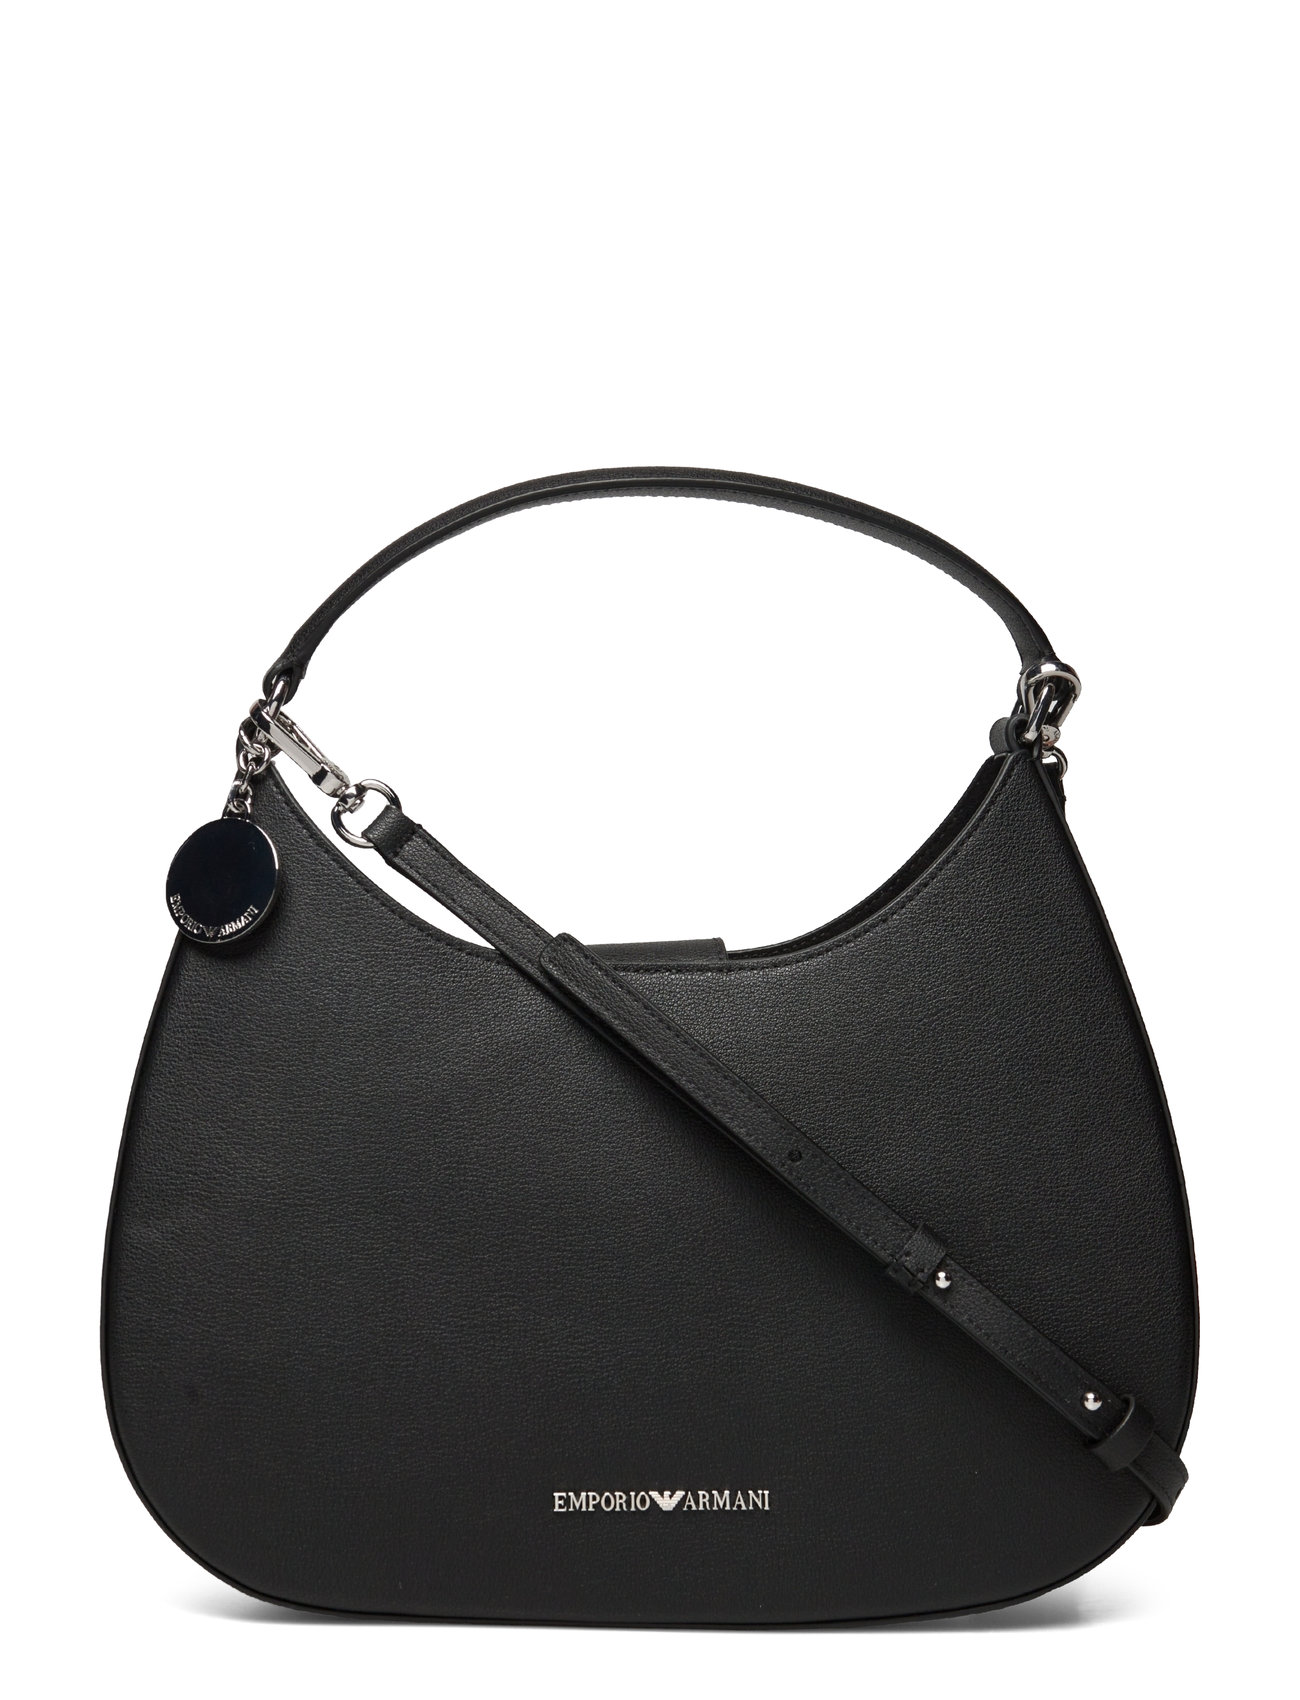 Emporio Armani Tote Bags for Women for sale | eBay